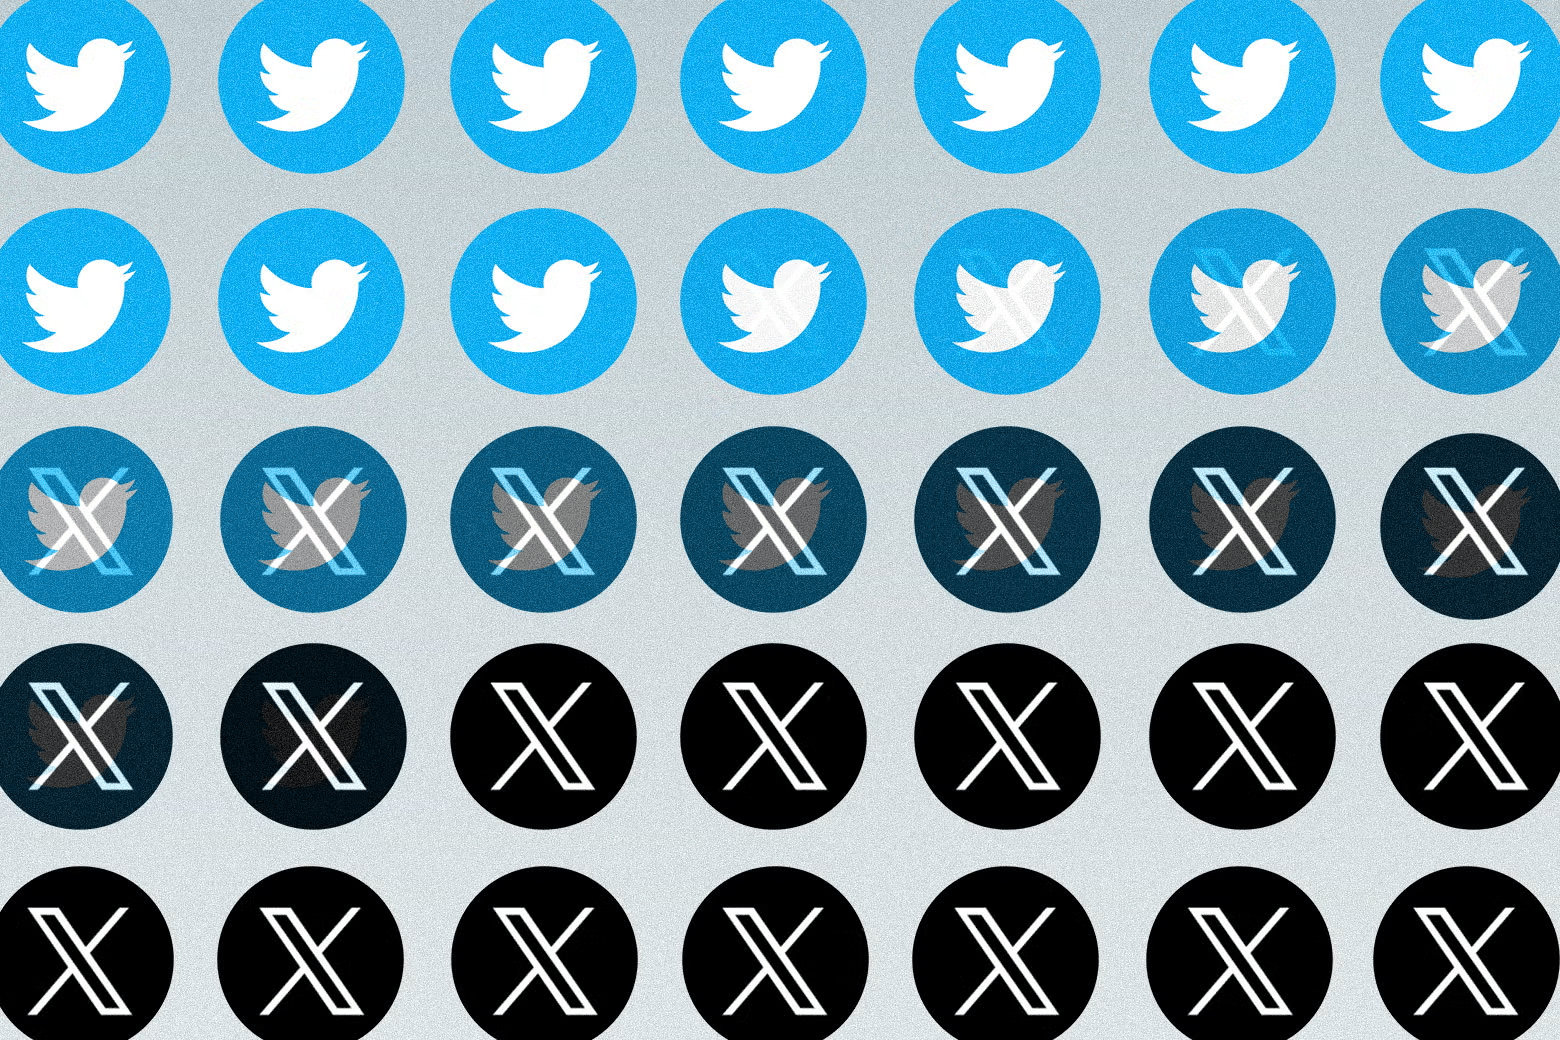 تصفح تويتر X | دليلك الشامل لإستخدام الموقع 2